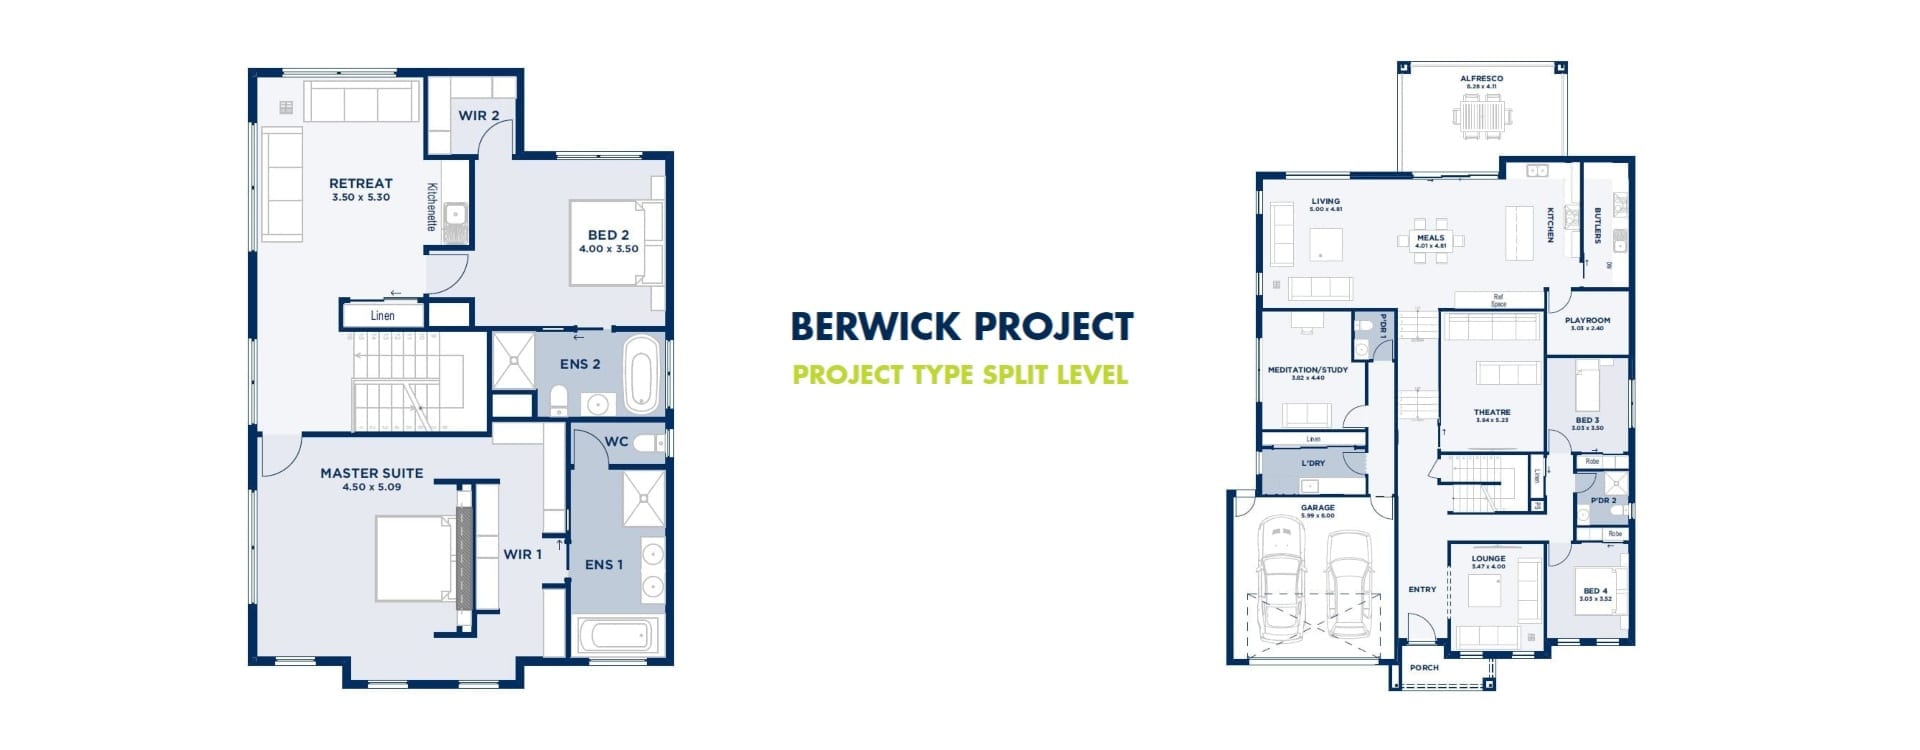 berwick project floor plan